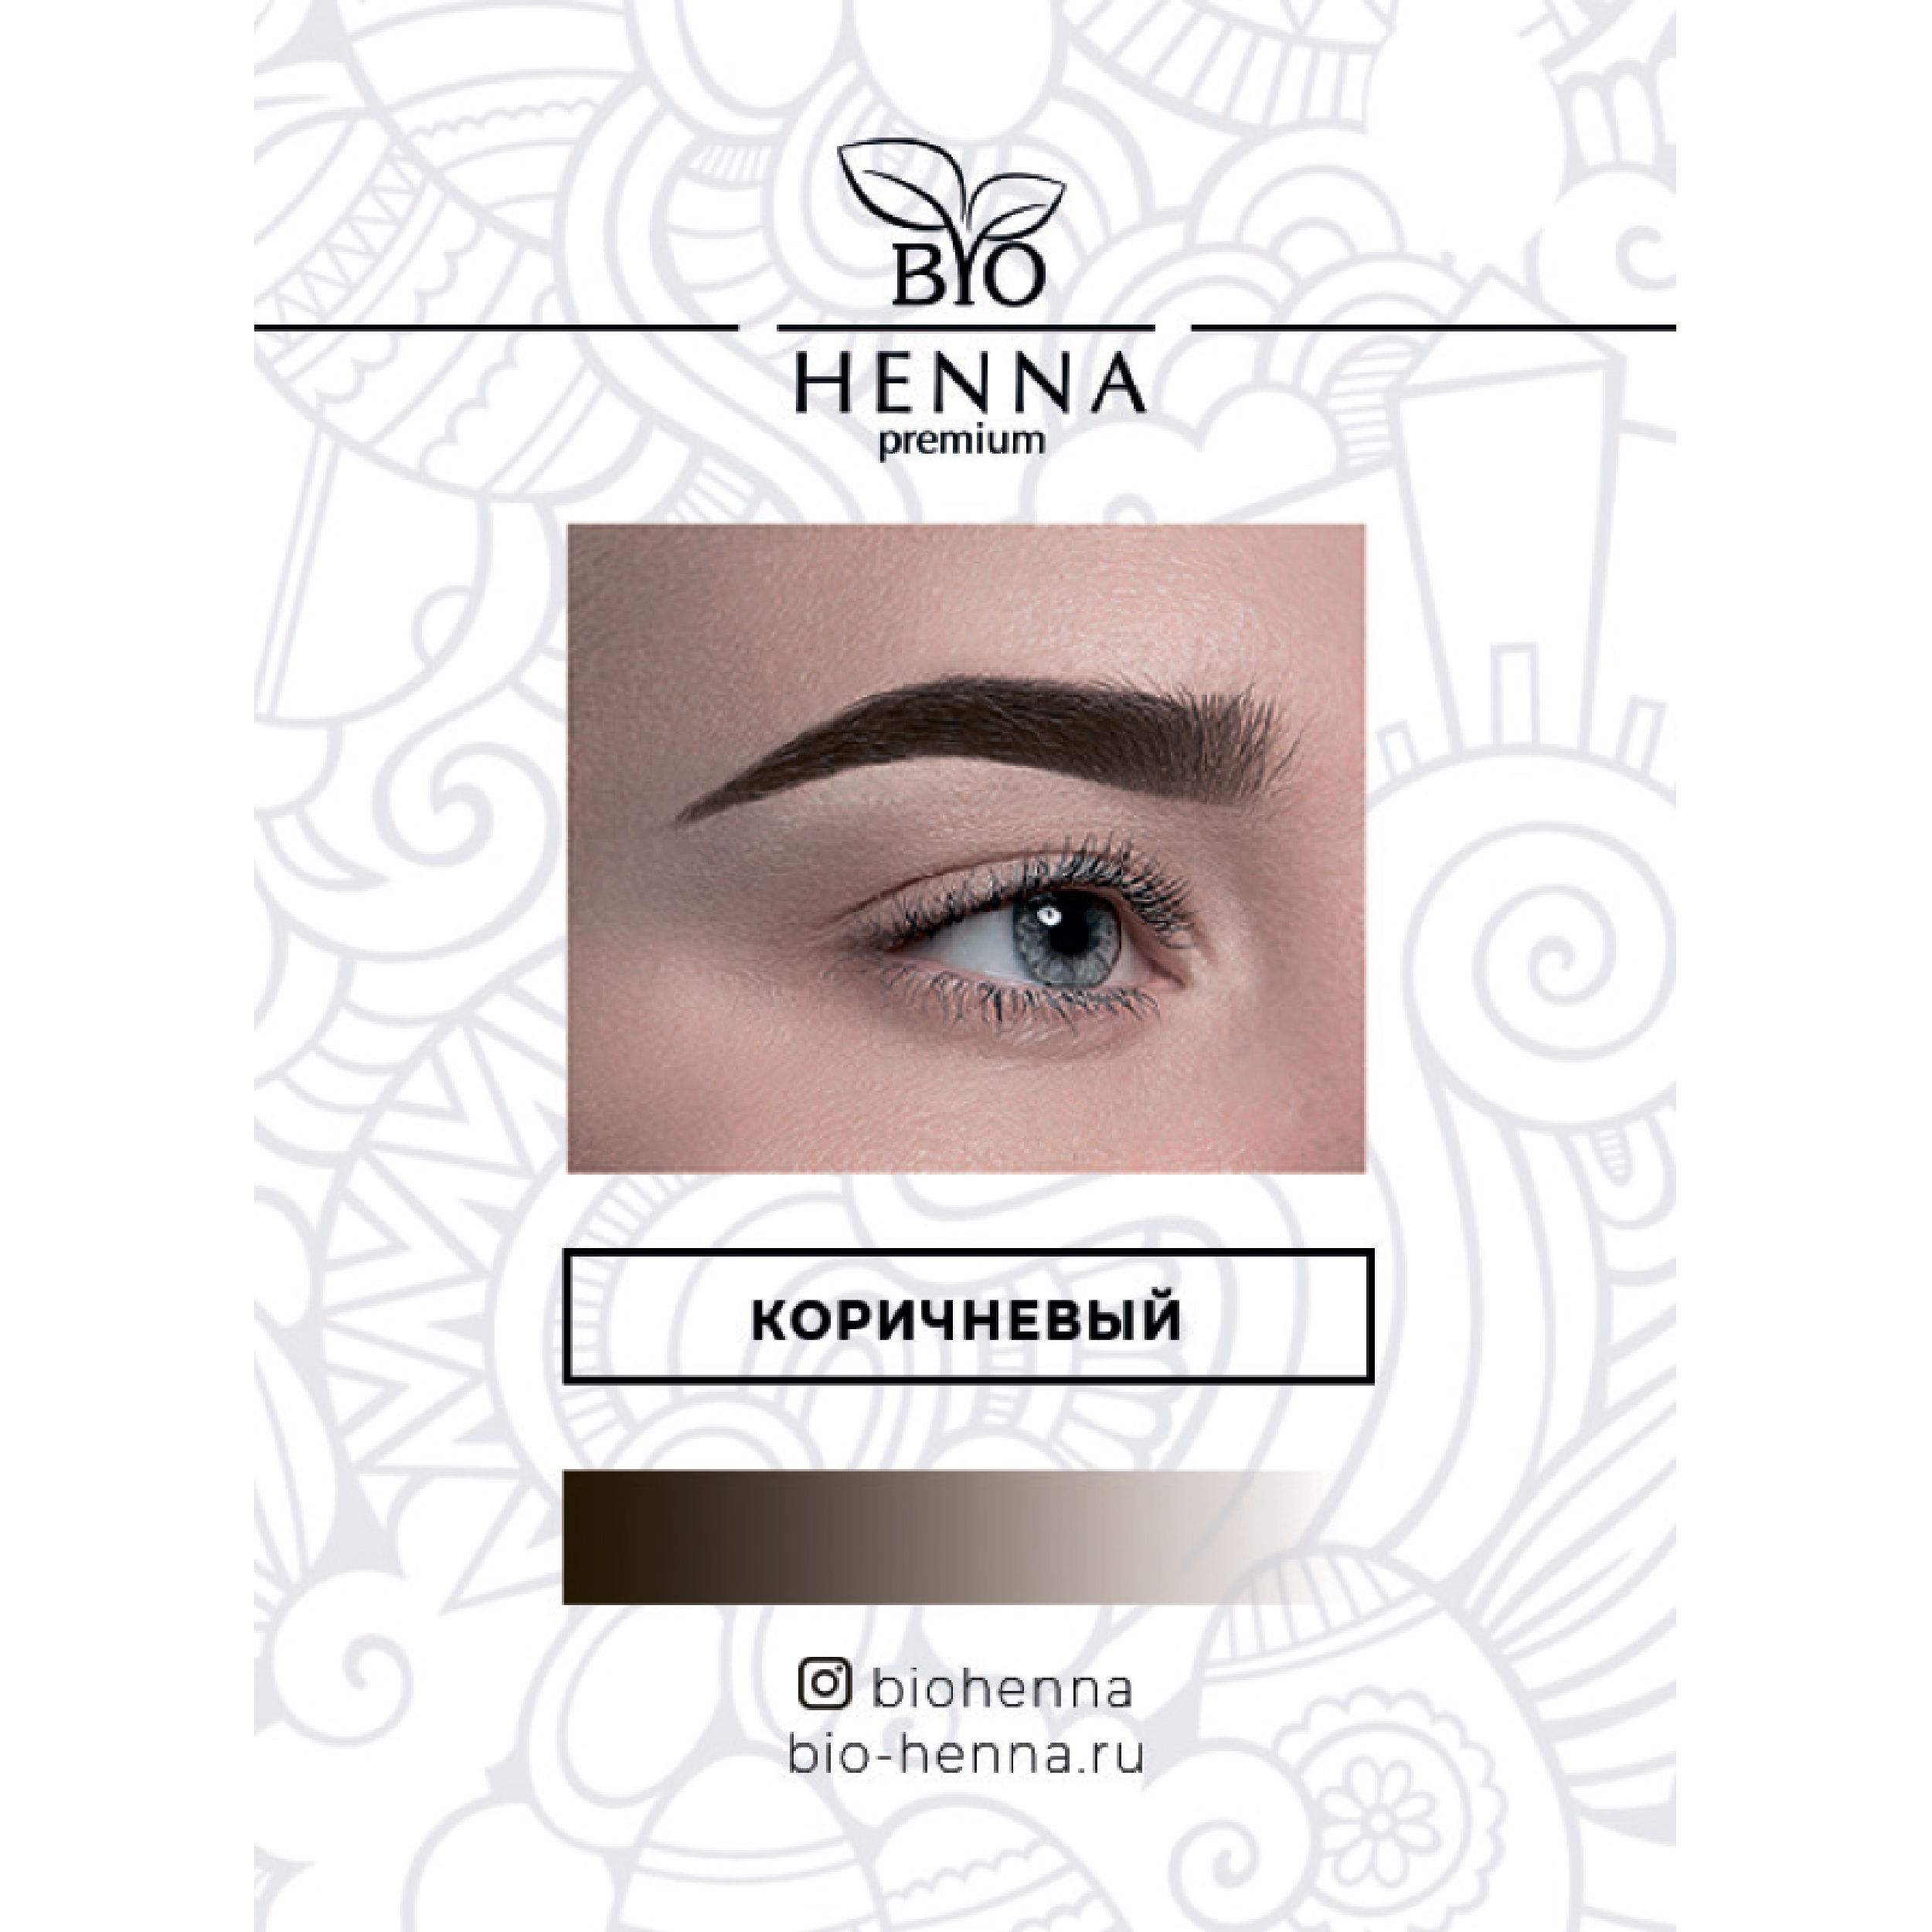 Хна Bio Henna в капсулах оттенок Коричневый, 1 шт, 0,2 гр